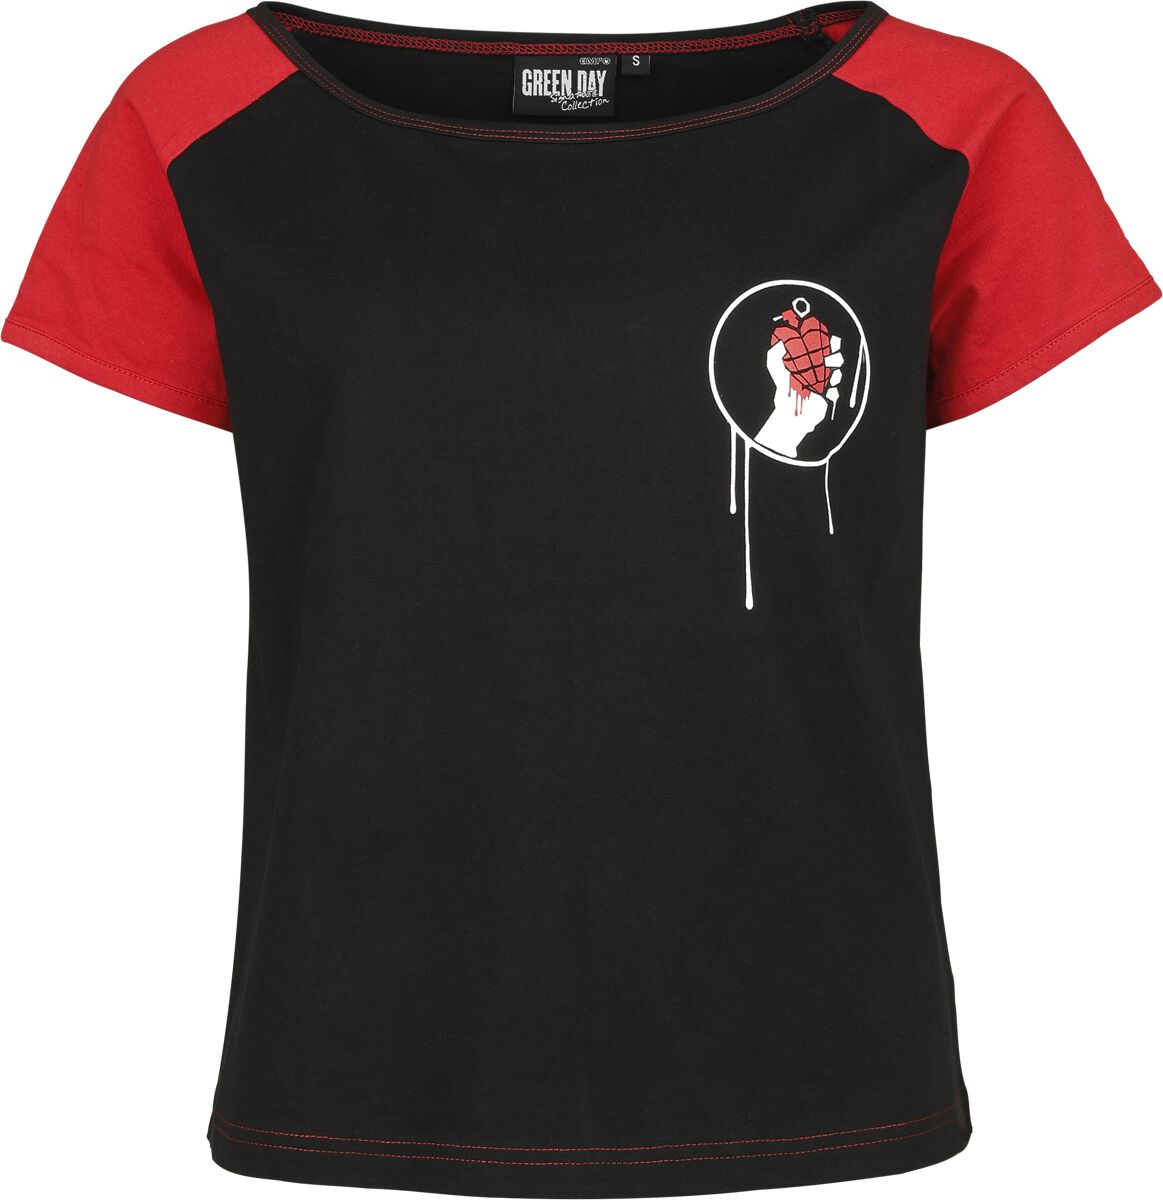 Green Day T-Shirt - EMP Signature Collection - XS bis XXL - für Damen - Größe XXL - schwarz/rot  - EMP exklusives Merchandise!